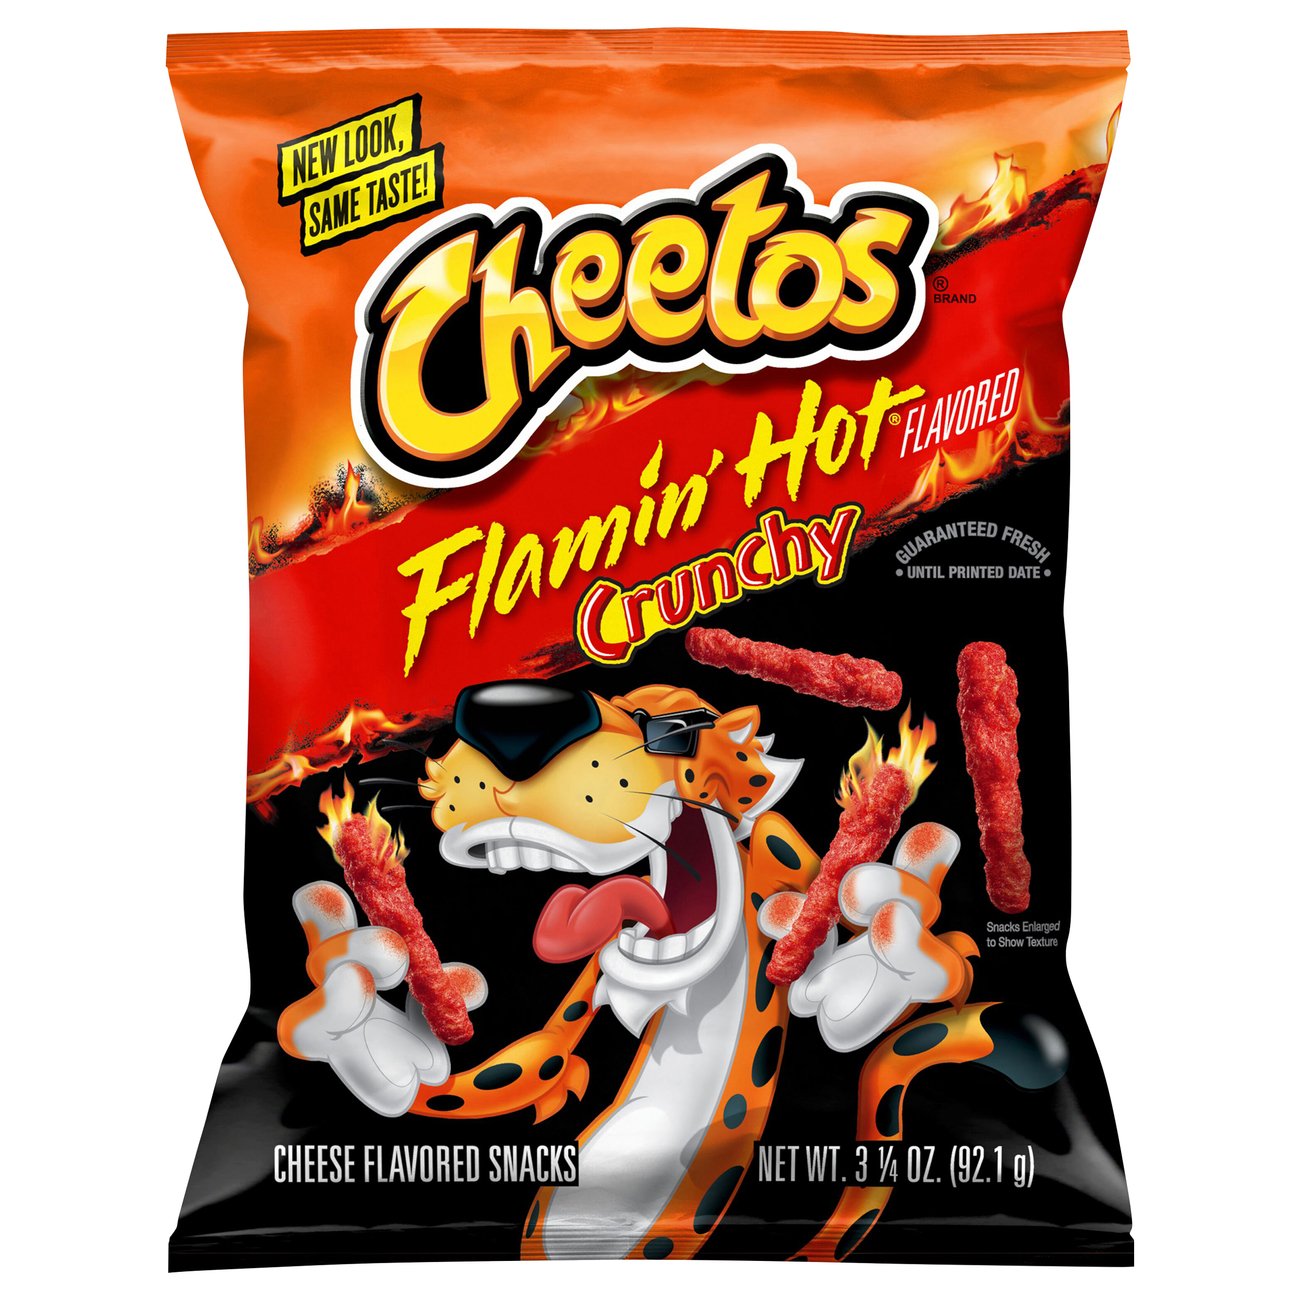 Cheetos Crunchy Flamin Hot Cheese Snacks Shop Chips At H E B